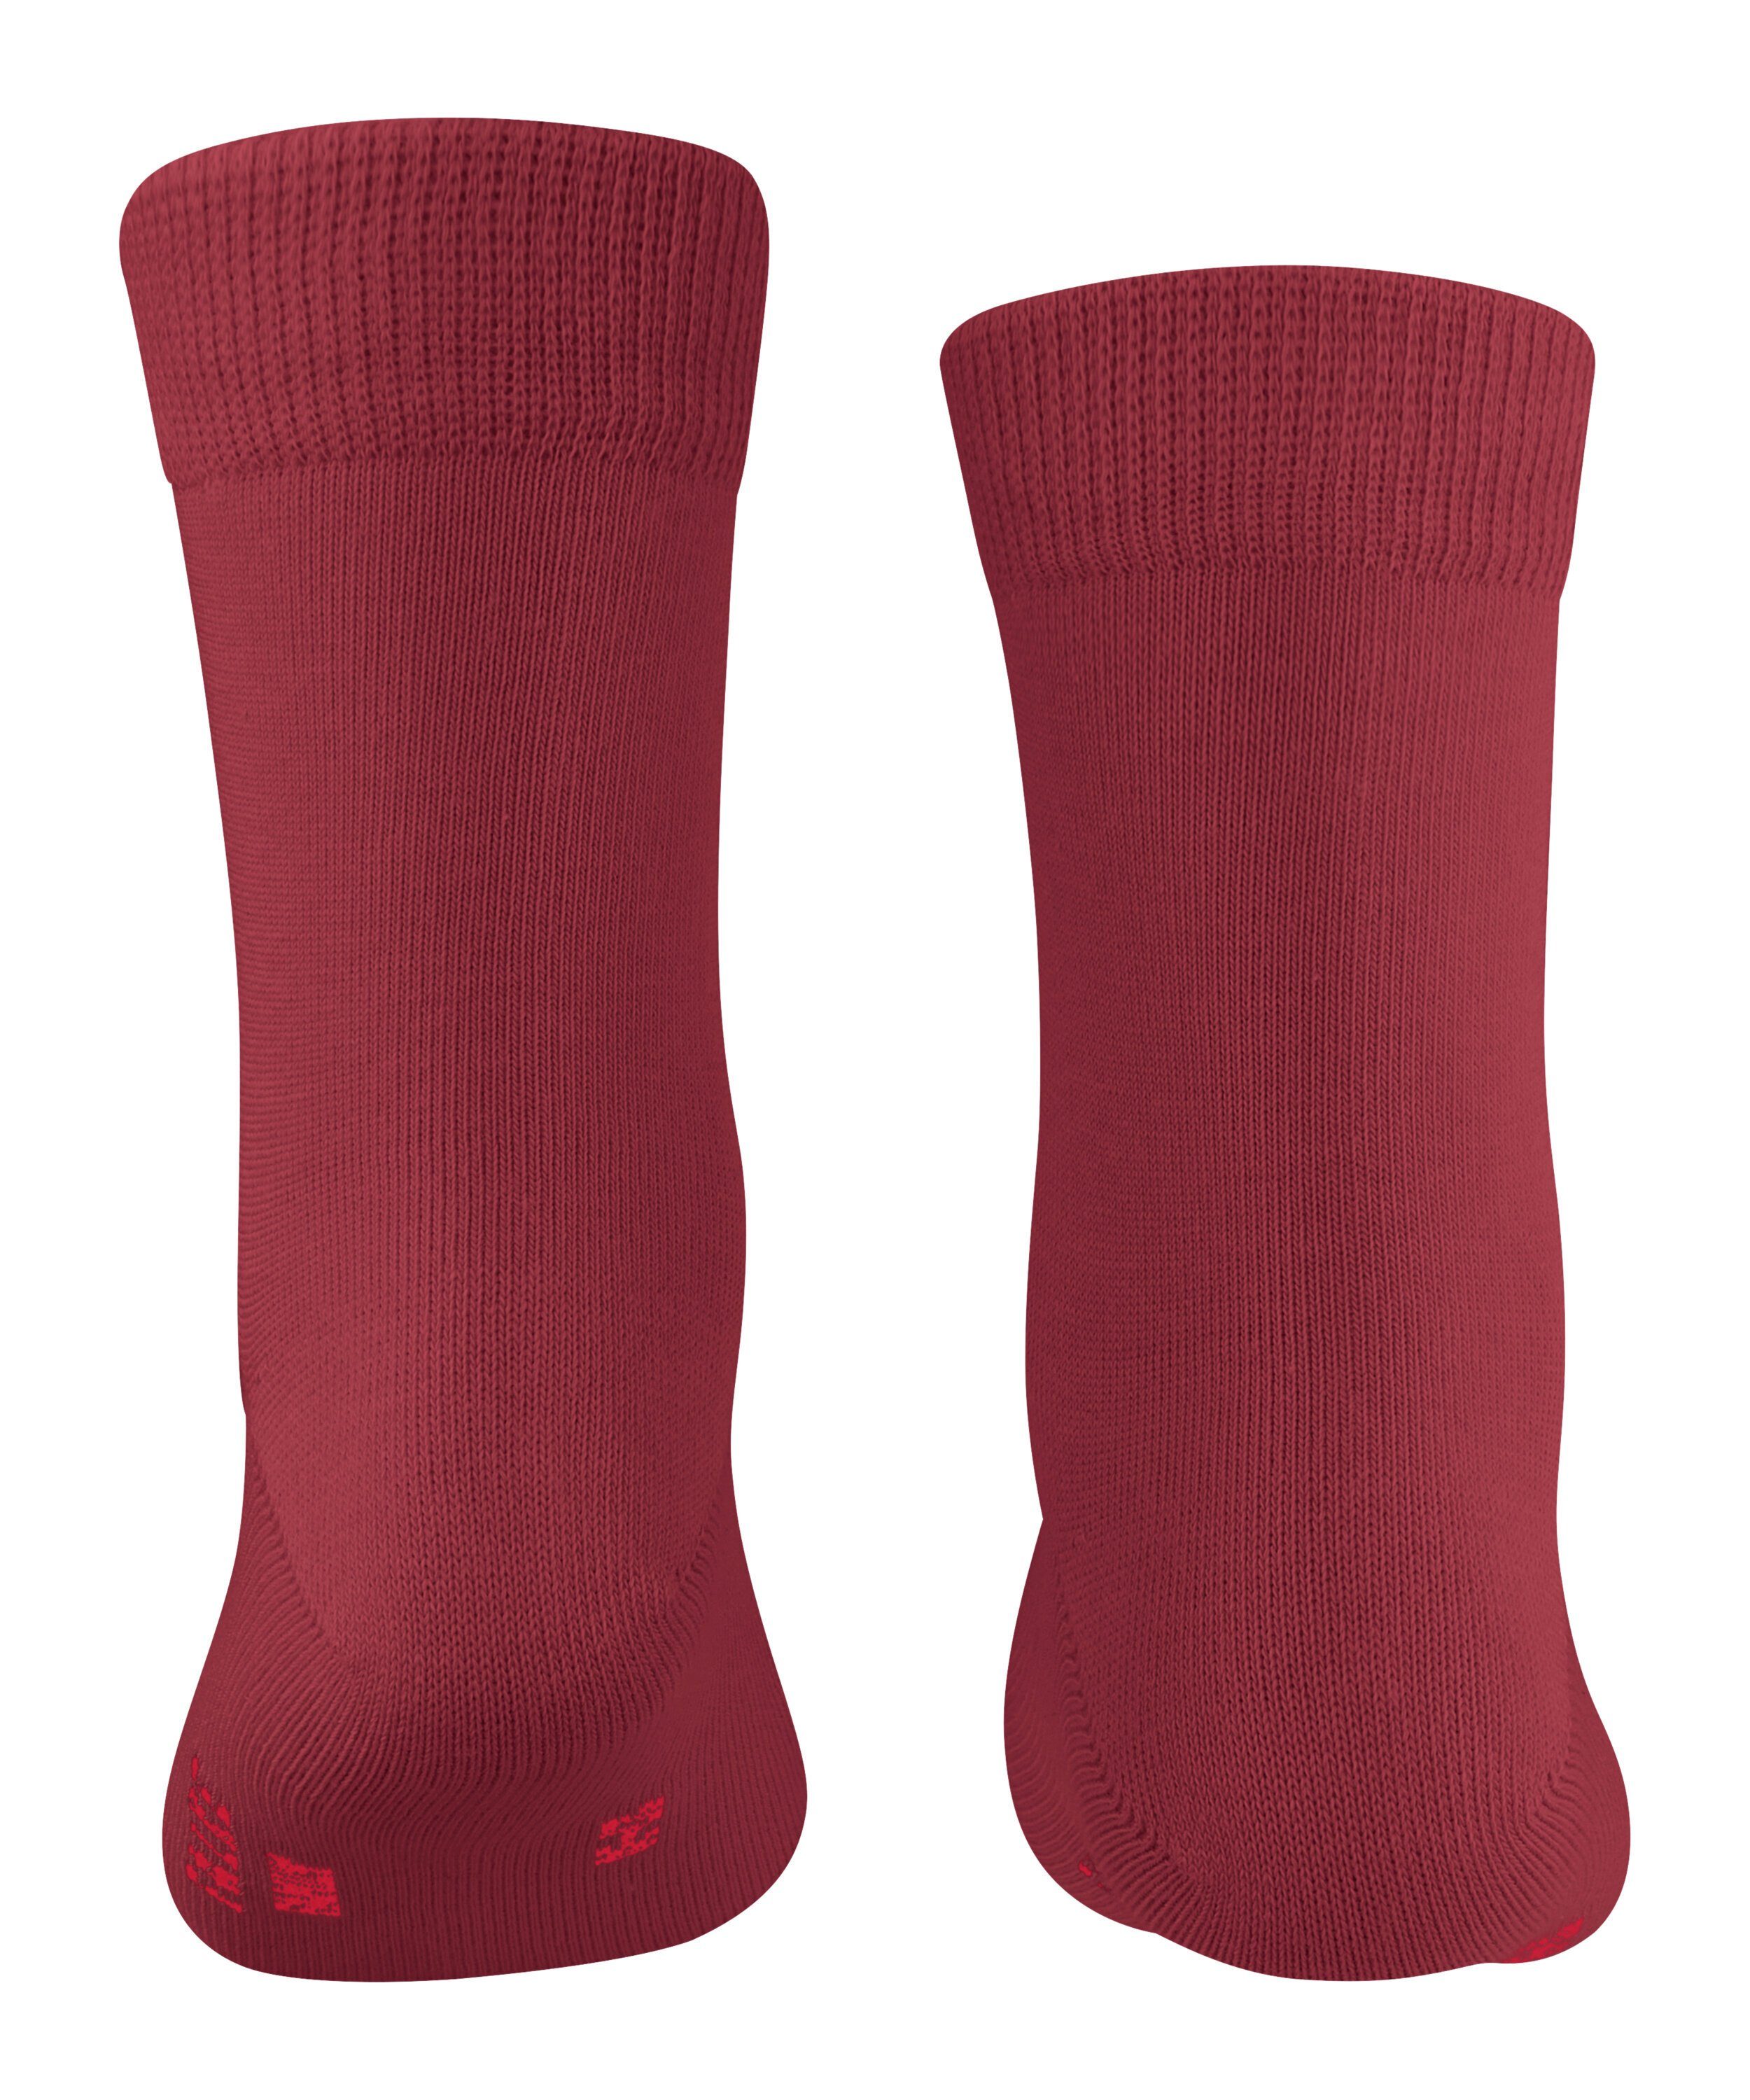 FALKE Socken Family (1-Paar) ruby (8830)